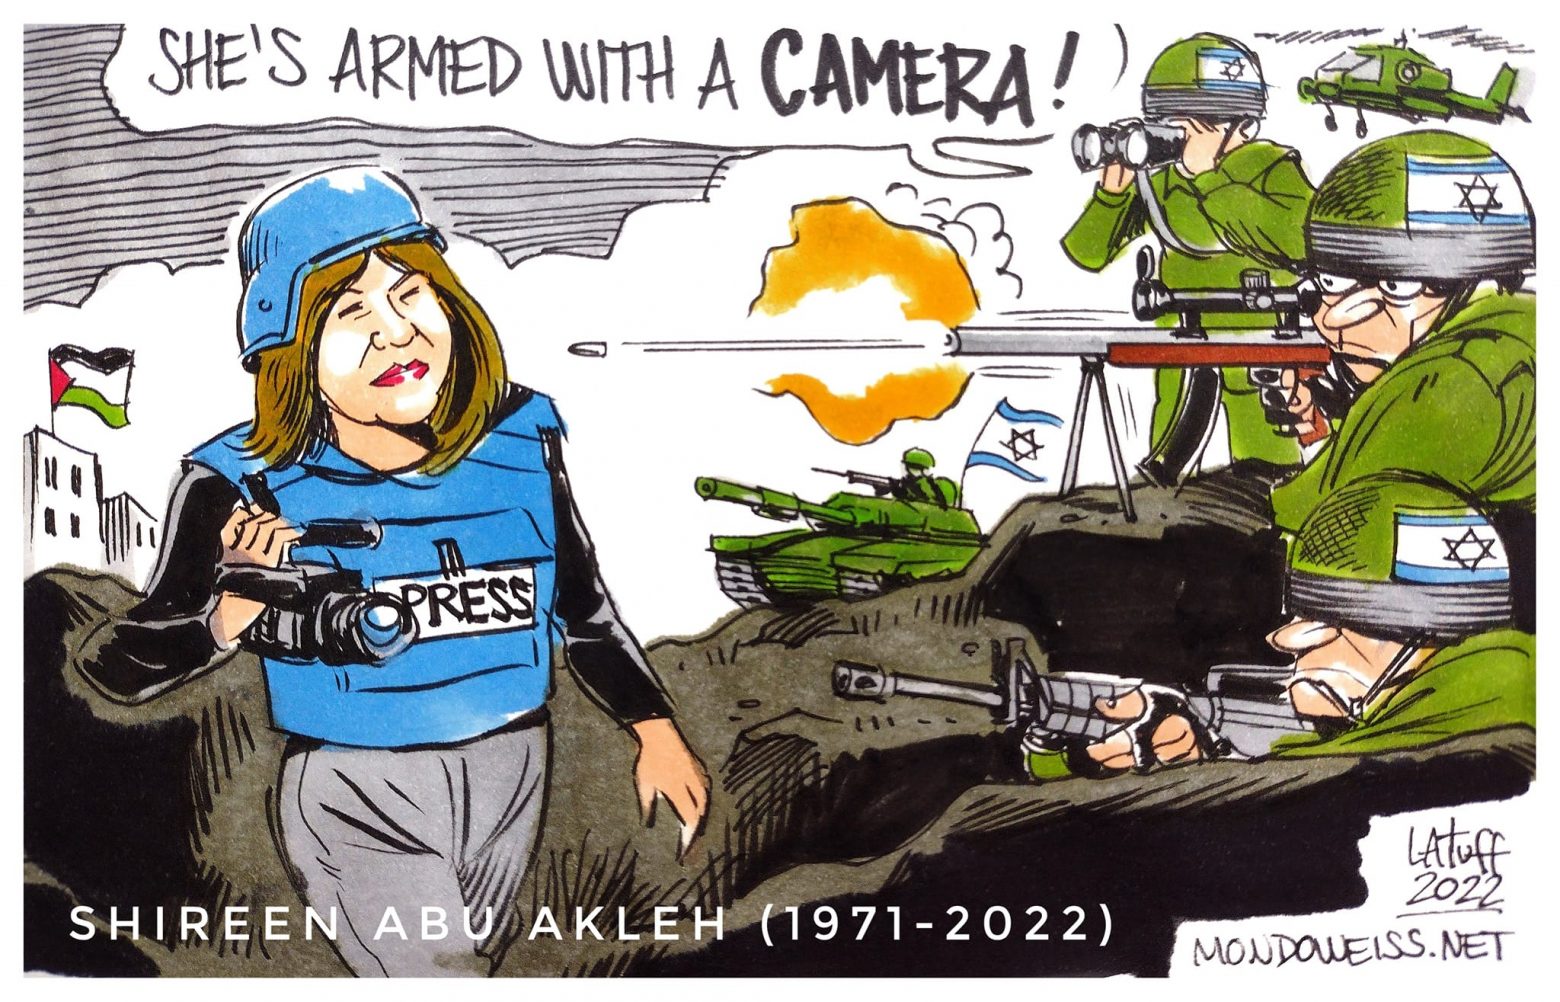 Σιρίν Αμπού Άκλεχ: Τρία συγκλονιστικά σκίτσα του Κάρλος Λατούφ - «Ήταν οπλισμένη με κάμερα»